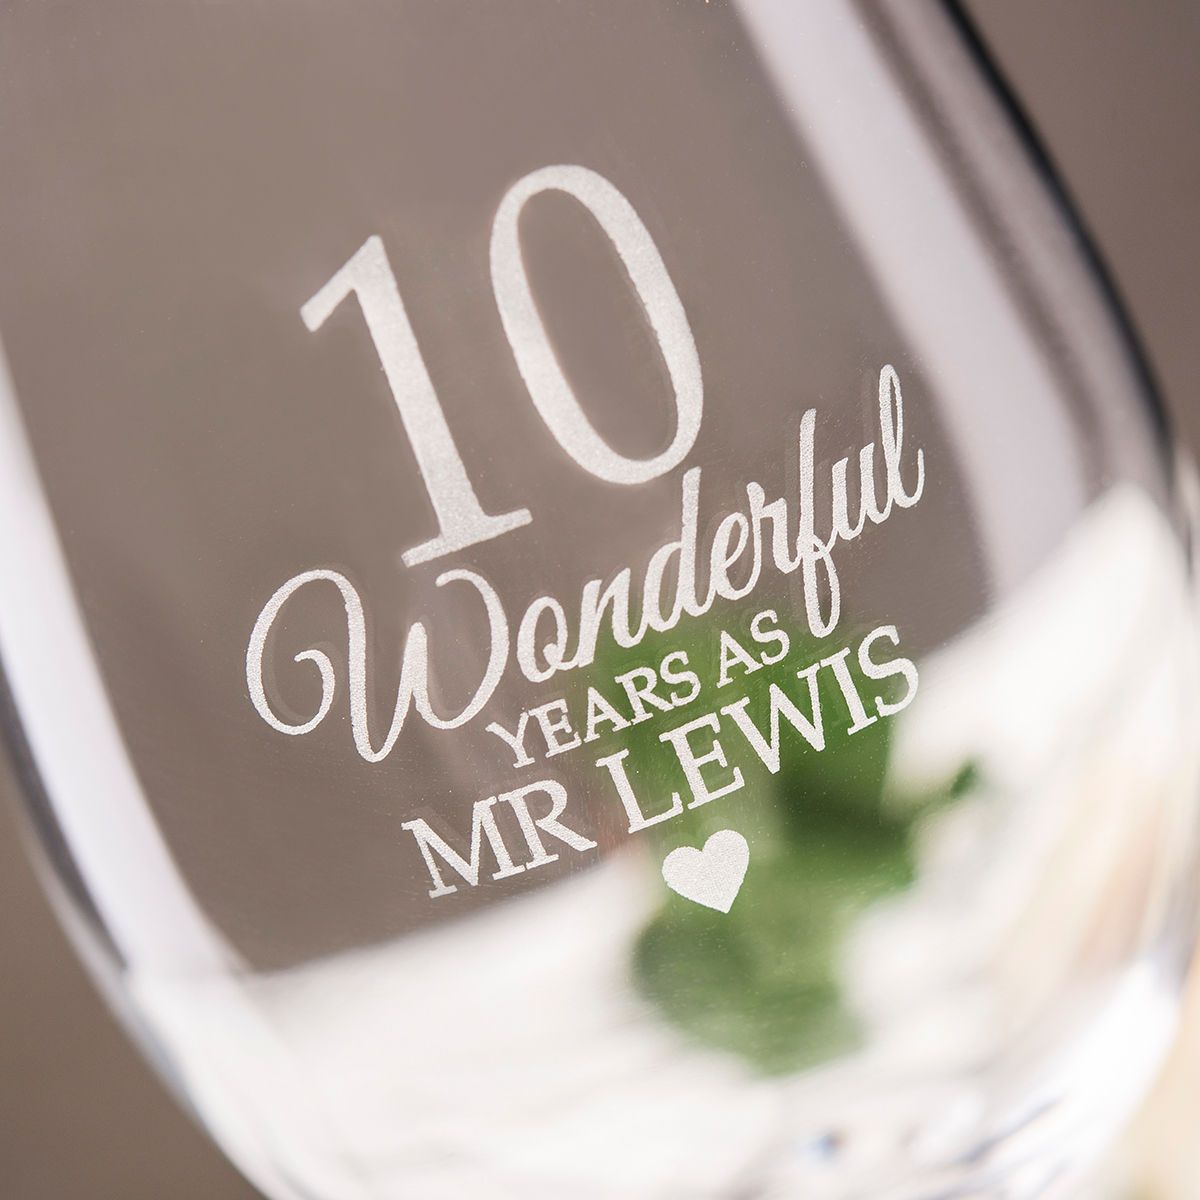 Personalised Set Of 2 Wine Glasses - 10 Wonderful Years As